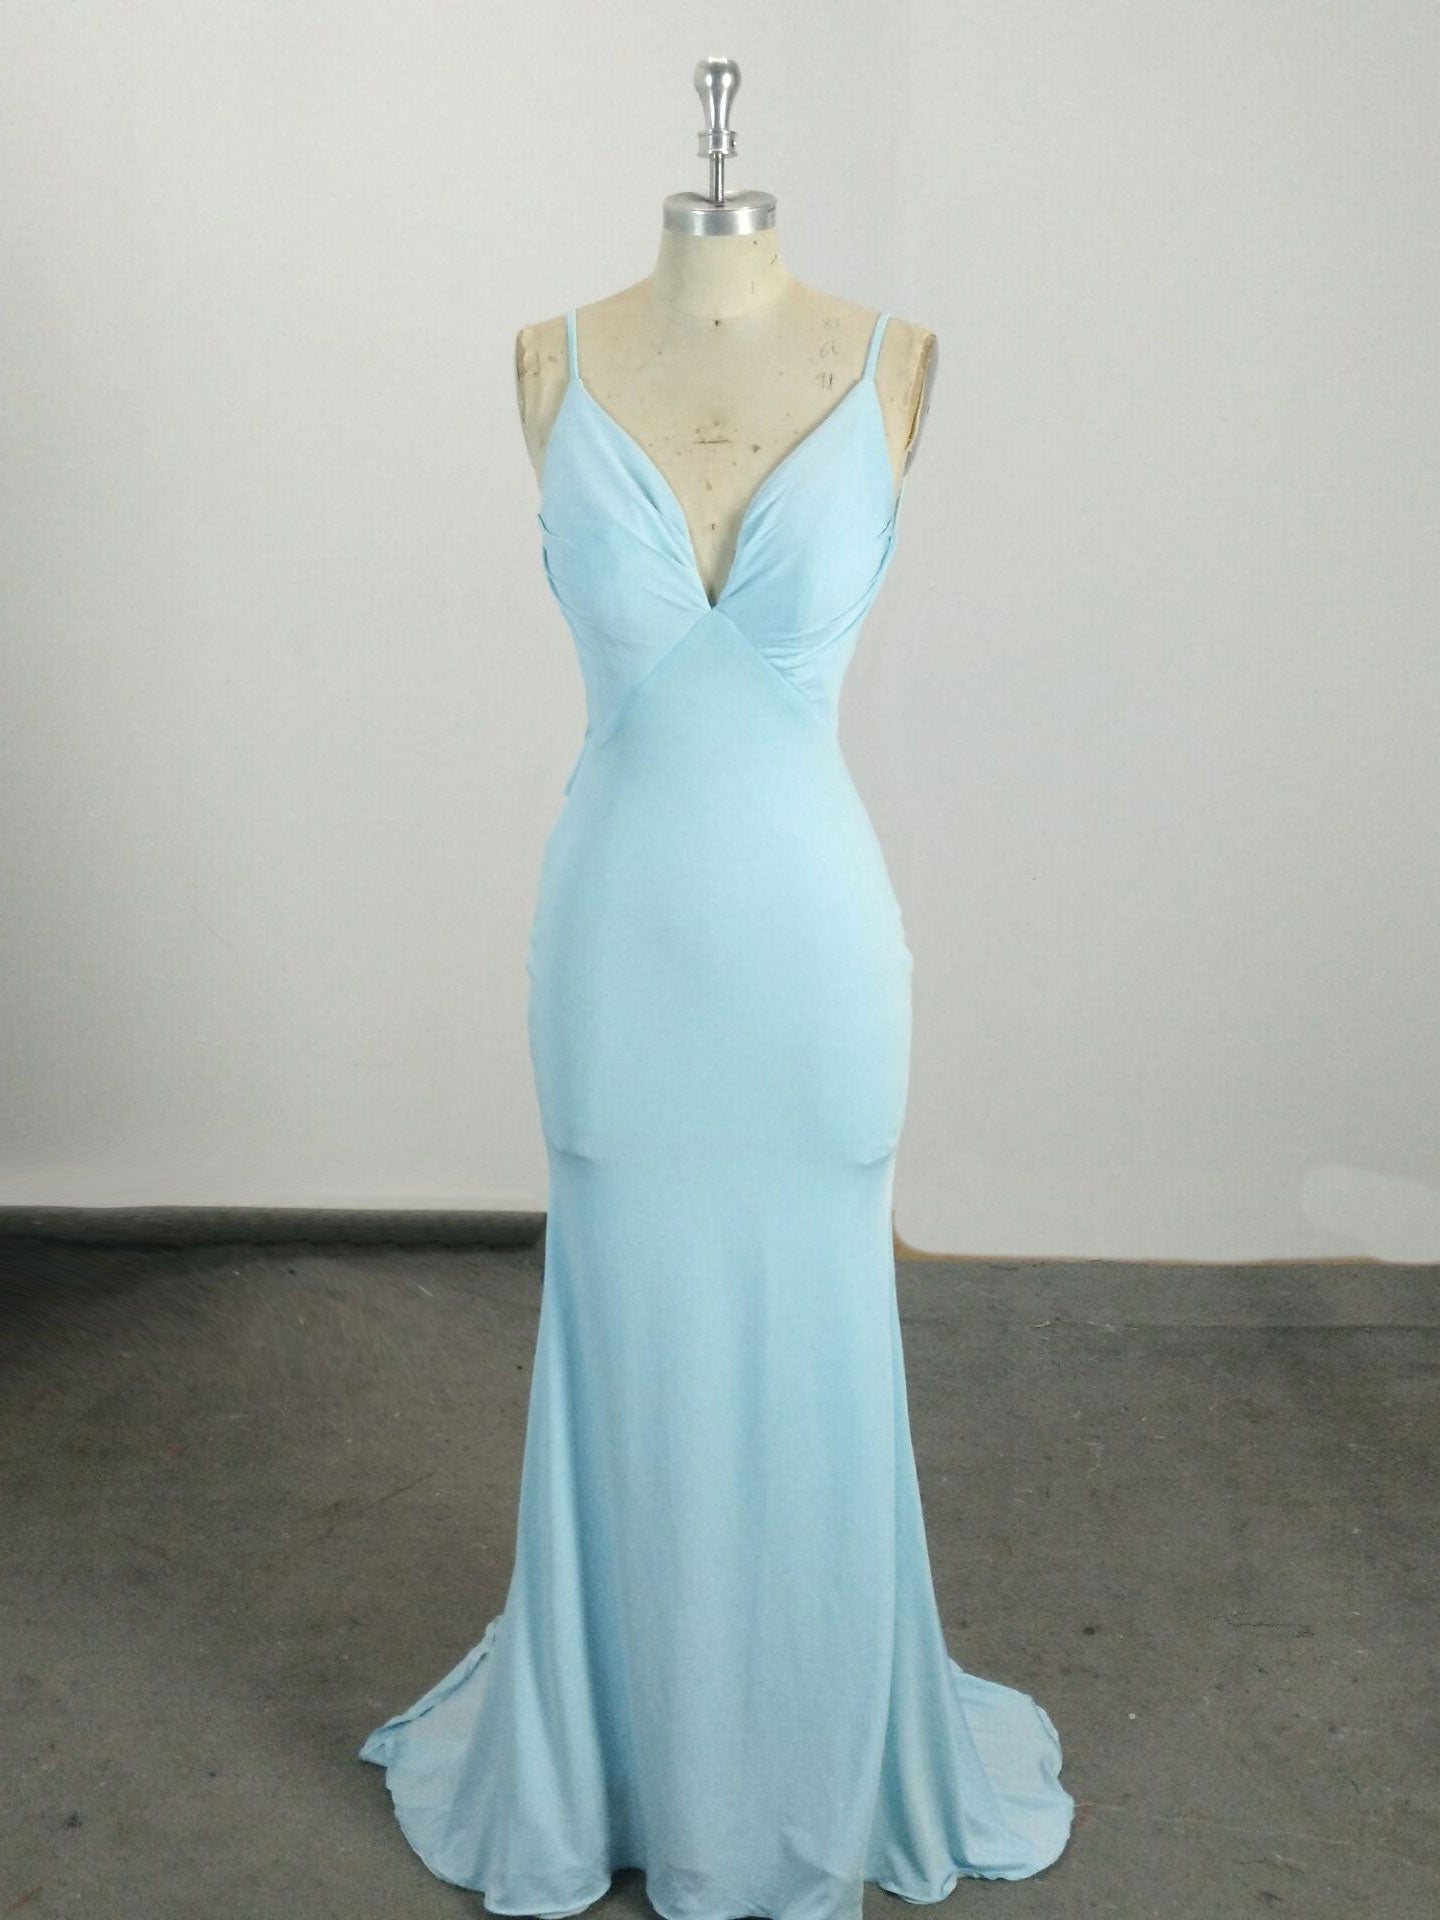 Simple Blue Mermaid Long Corset Prom Dress, Blue Evening Dress outfit, Prom Dresses Blue Long